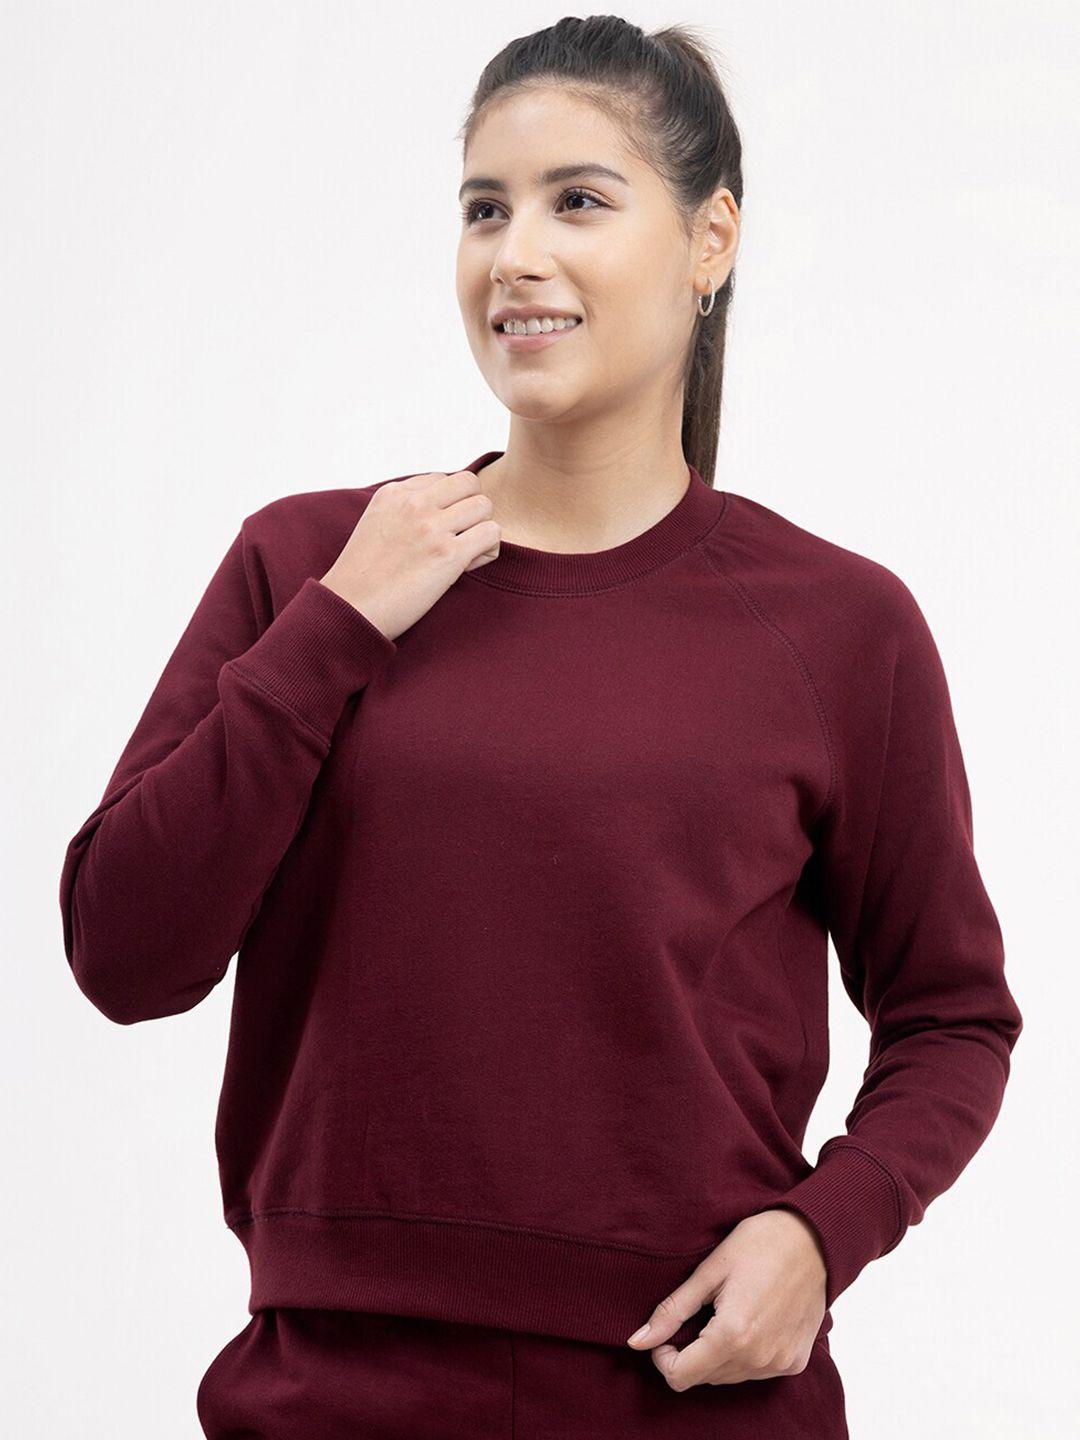 fablestreet-women-maroon-cotton-sweatshirt